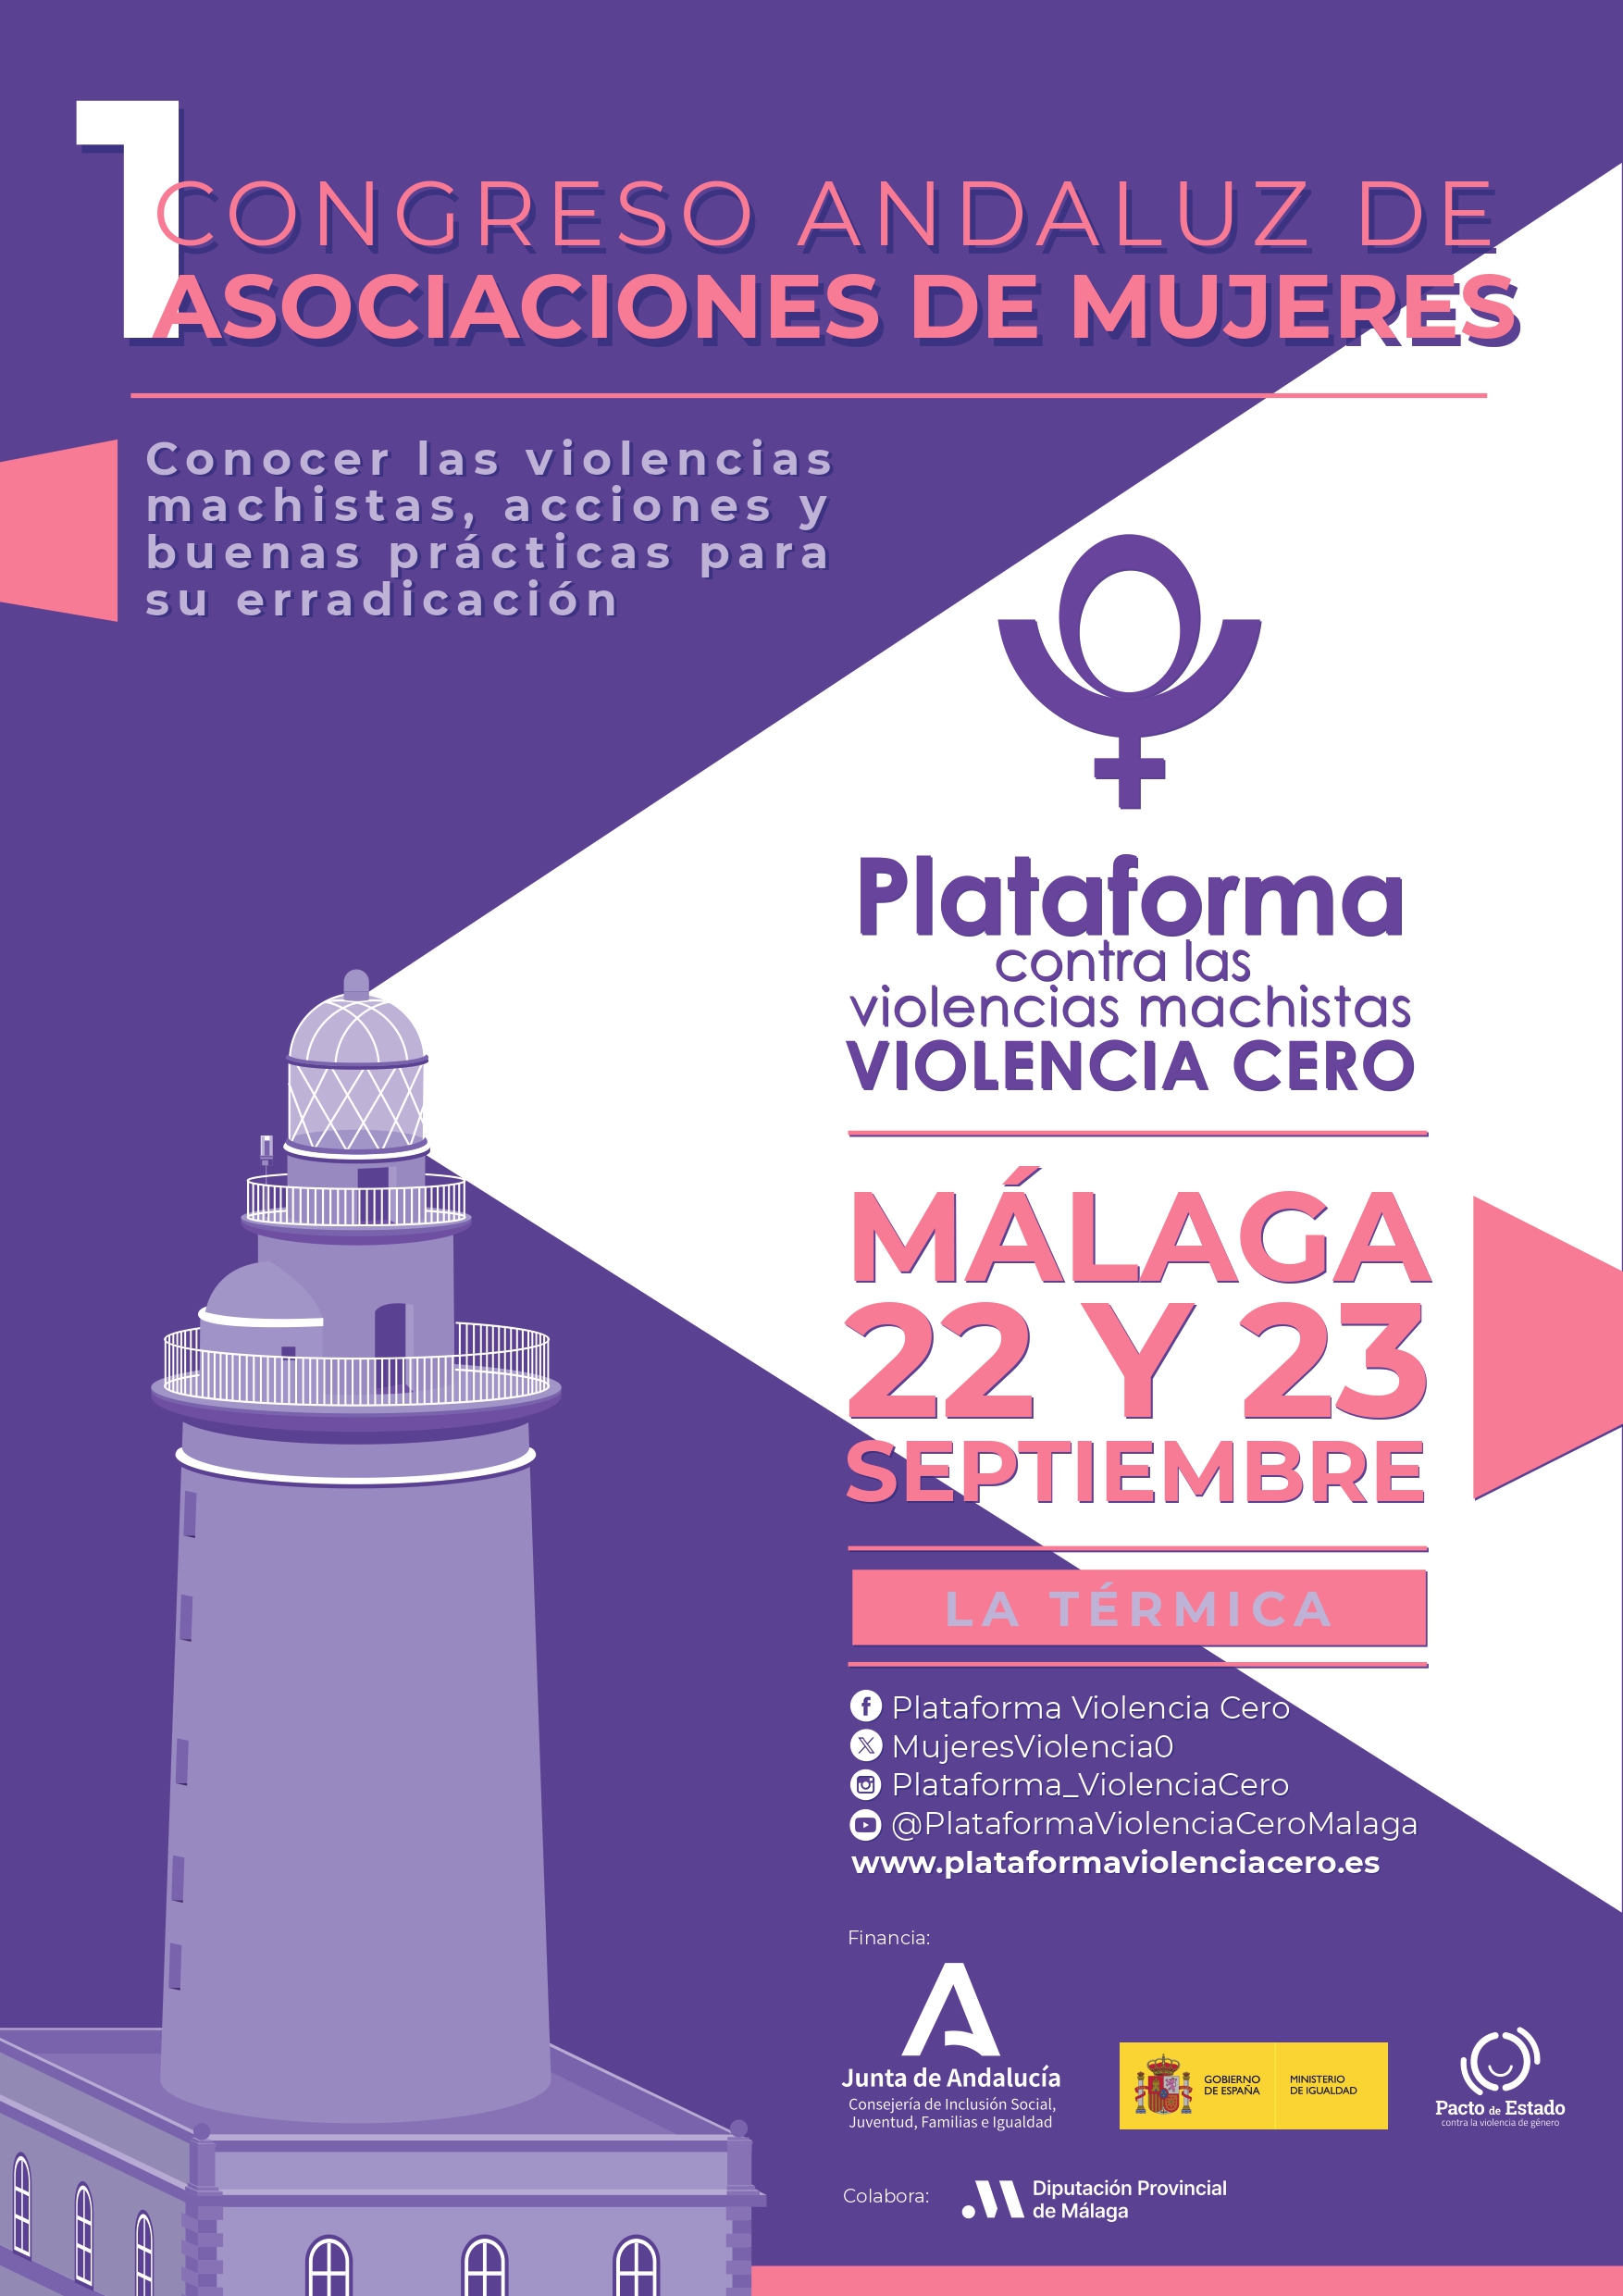 Cartel Promocional del 1 Congreso Andaluz de Asociaciones de Mujeres, organizado por la Plataforma contra las Violencias Machistas Violencia Cero, que tendrá lugar en La Térmica (Málaga) en 22 y 23 de septiembre. 